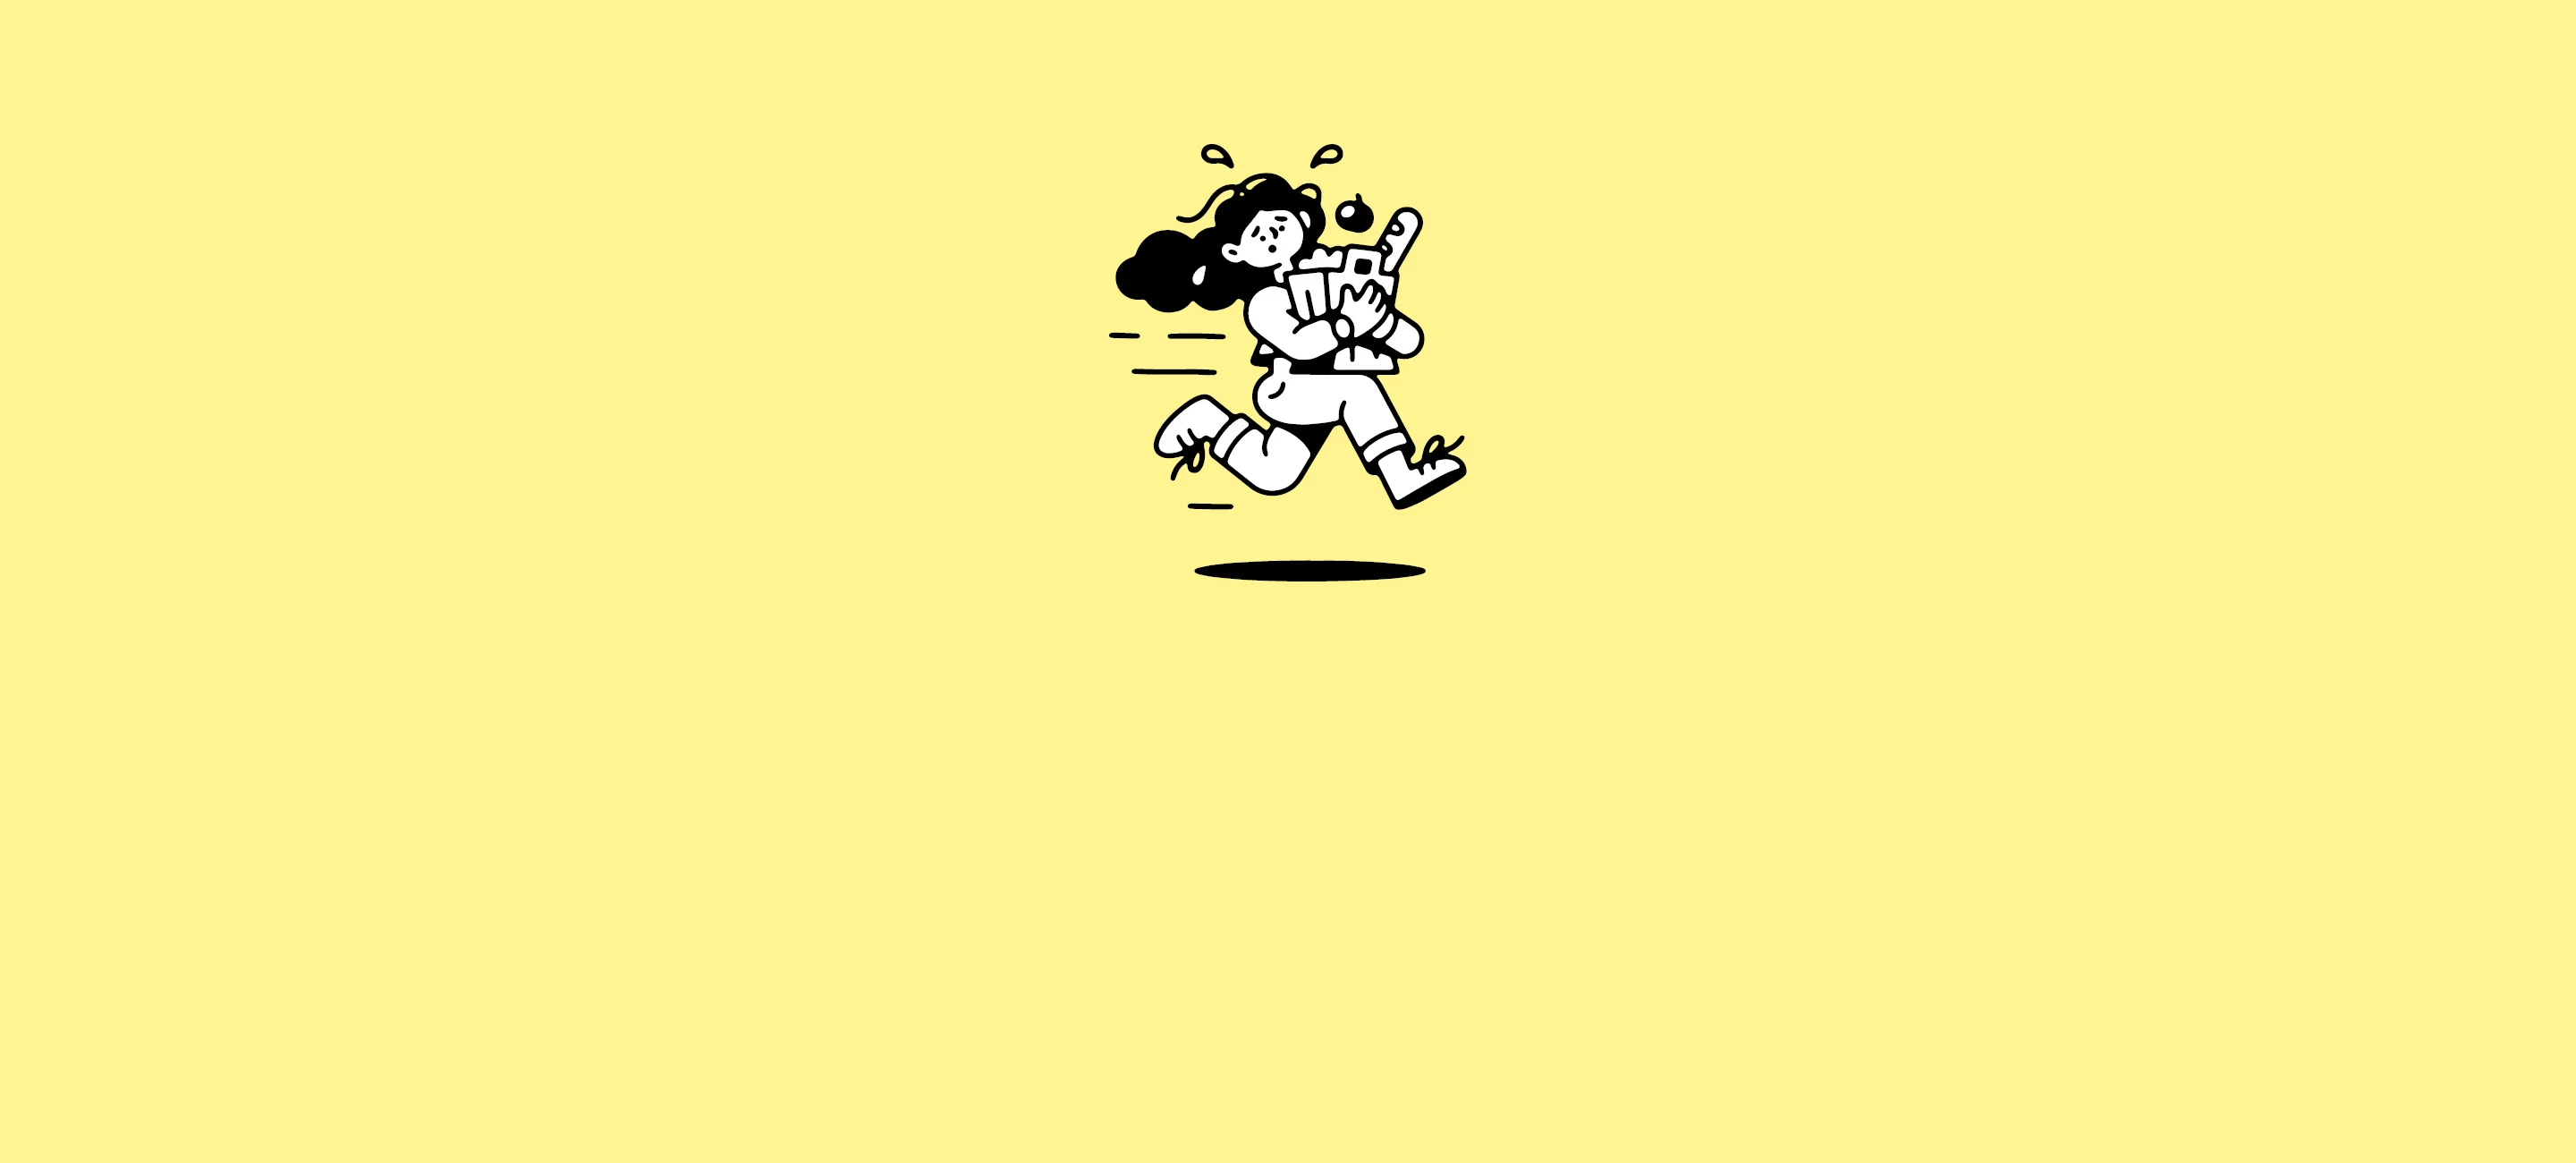 Illustration över stressad person som springer med matkasse